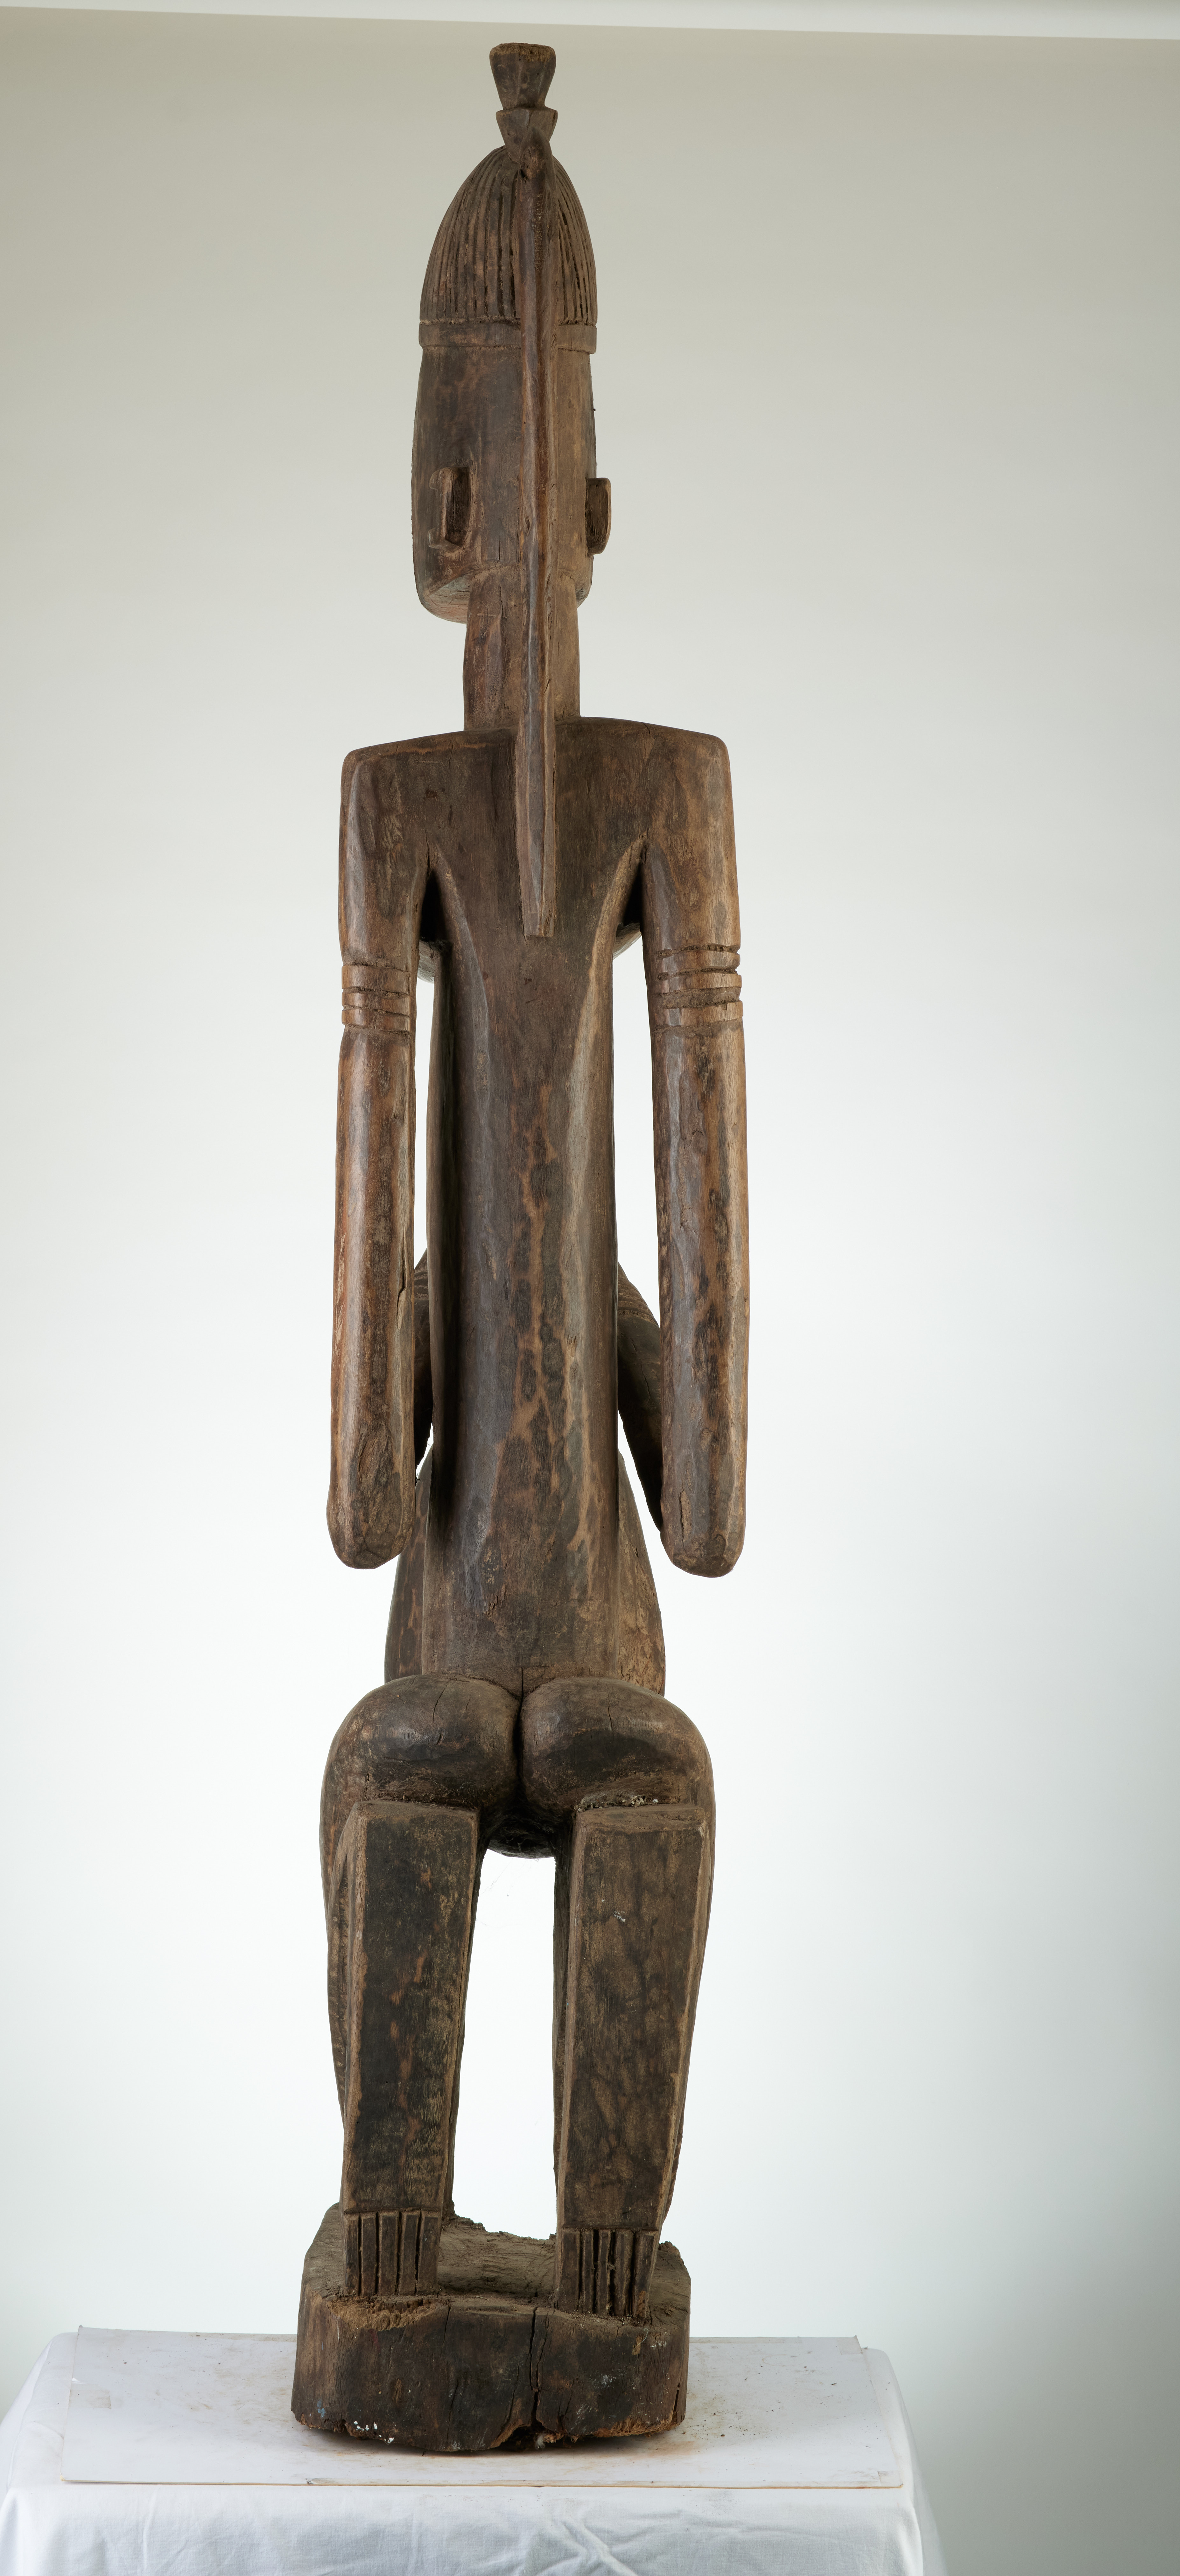 Dogon(femme  agenouillée+cruche), d`afrique : MALI, statuette Dogon(femme  agenouillée+cruche), masque ancien africain Dogon(femme  agenouillée+cruche), art du MALI - Art Africain, collection privées Belgique. Statue africaine de la tribu des Dogon(femme  agenouillée+cruche), provenant du MALI, 1853:statue d